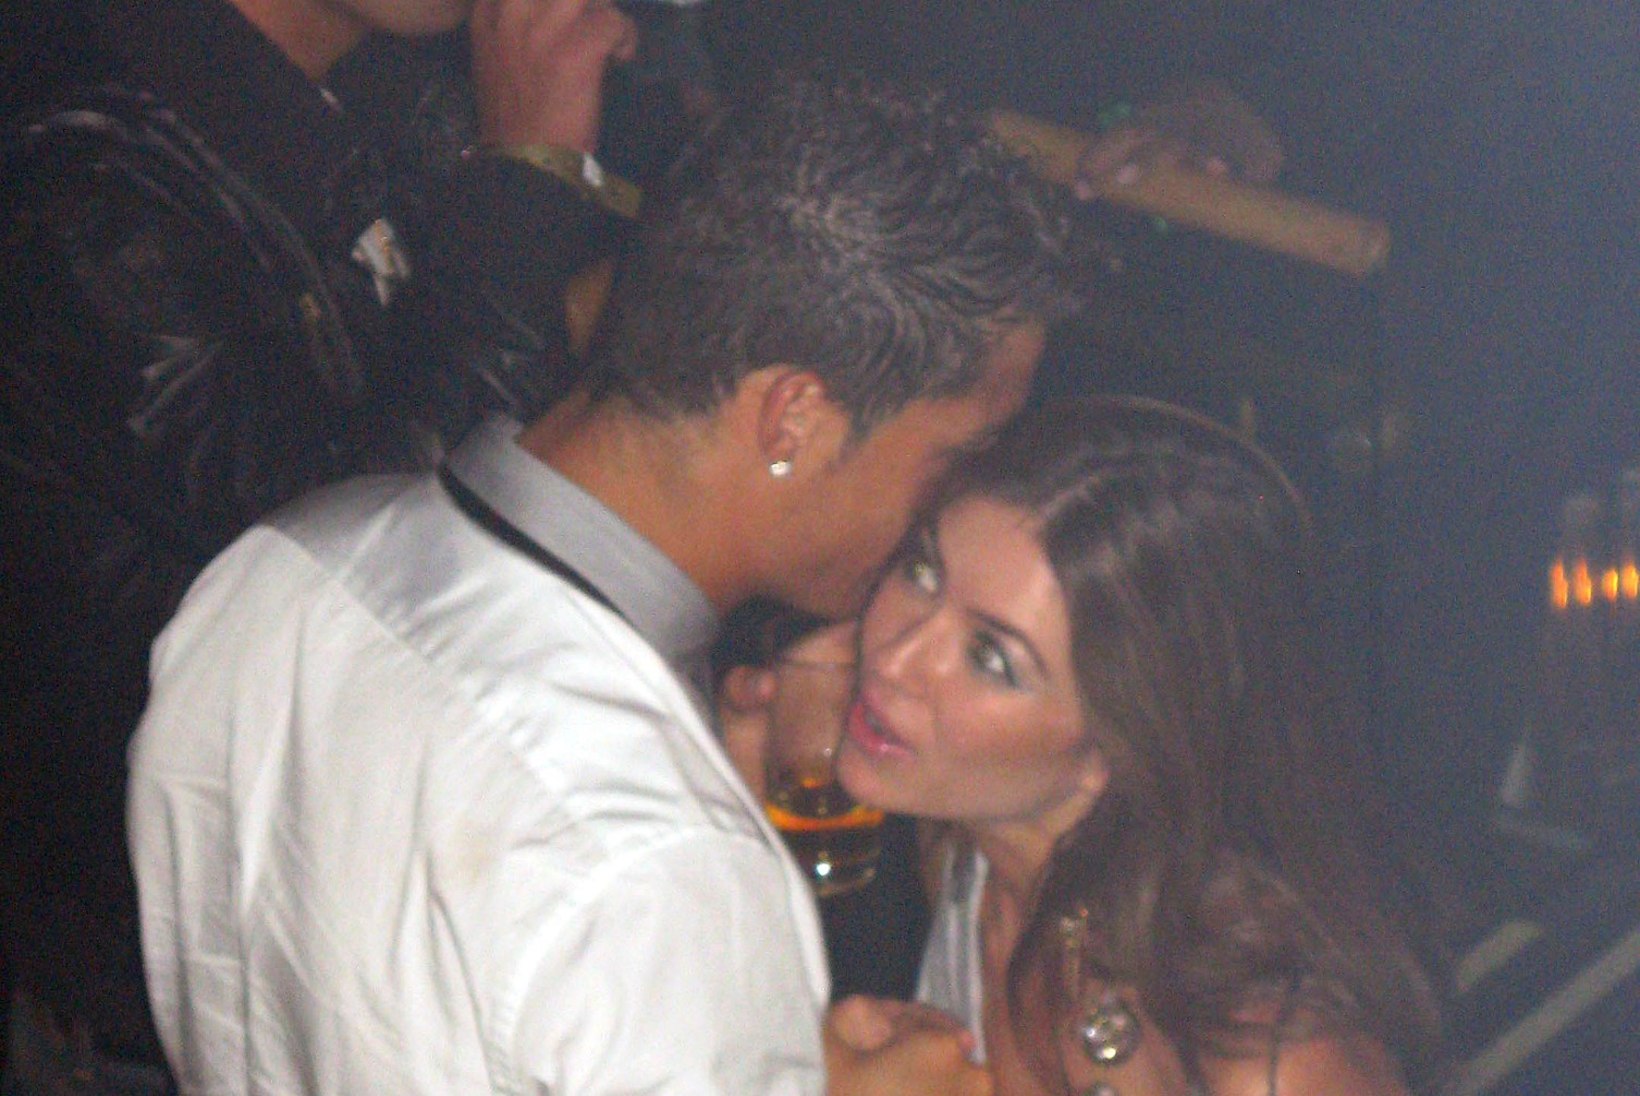 Ronaldo pöörane armuelu: Hiltonist ja Kardashianist kuni rõveda vägistamissüüdistuseni